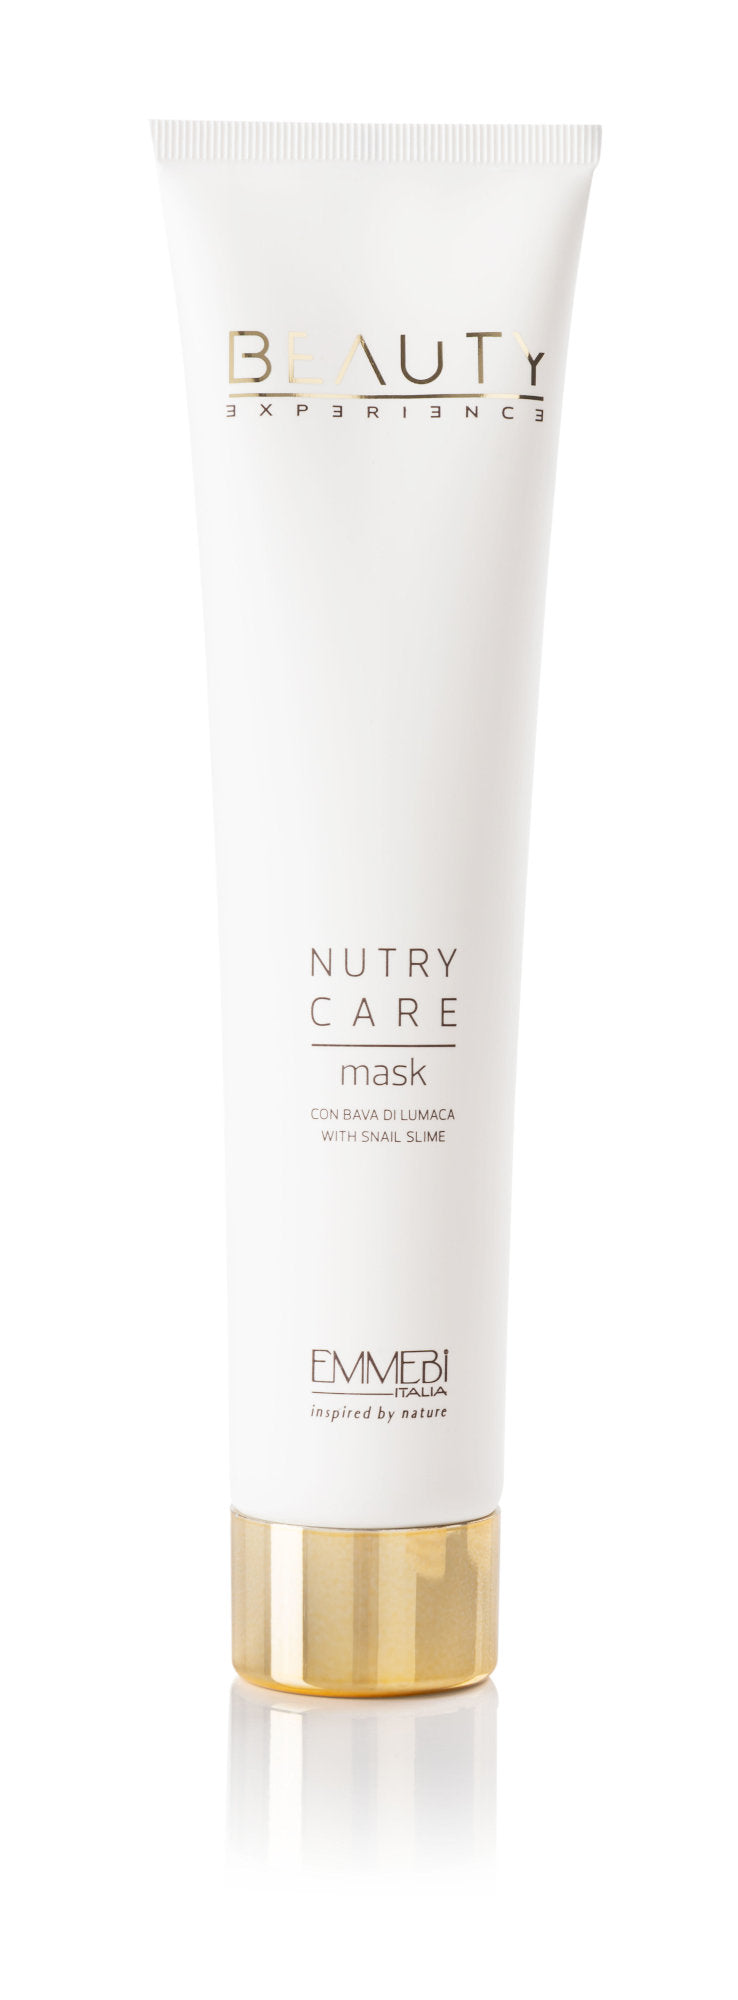 Nutry Care Mask - Maschera per capelli rigenerante con Vitamina E e Proteine della seta - 200 ml